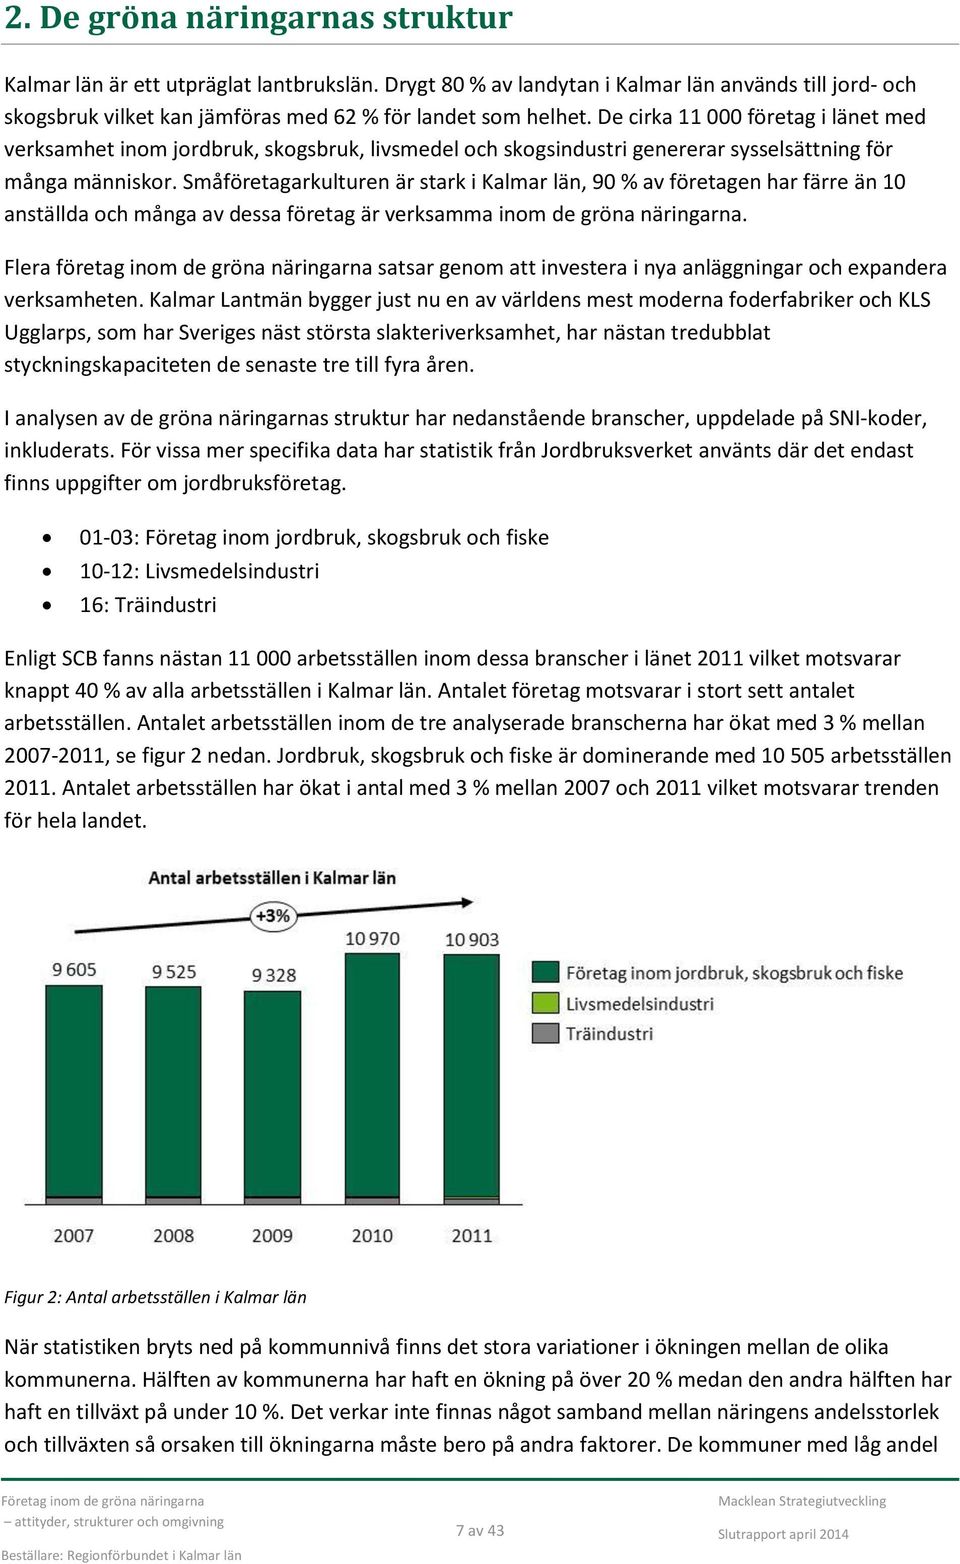 Småföretagarkulturen är stark i Kalmar län, 90 % av företagen har färre än 10 anställda och många av dessa företag är verksamma inom de gröna näringarna.